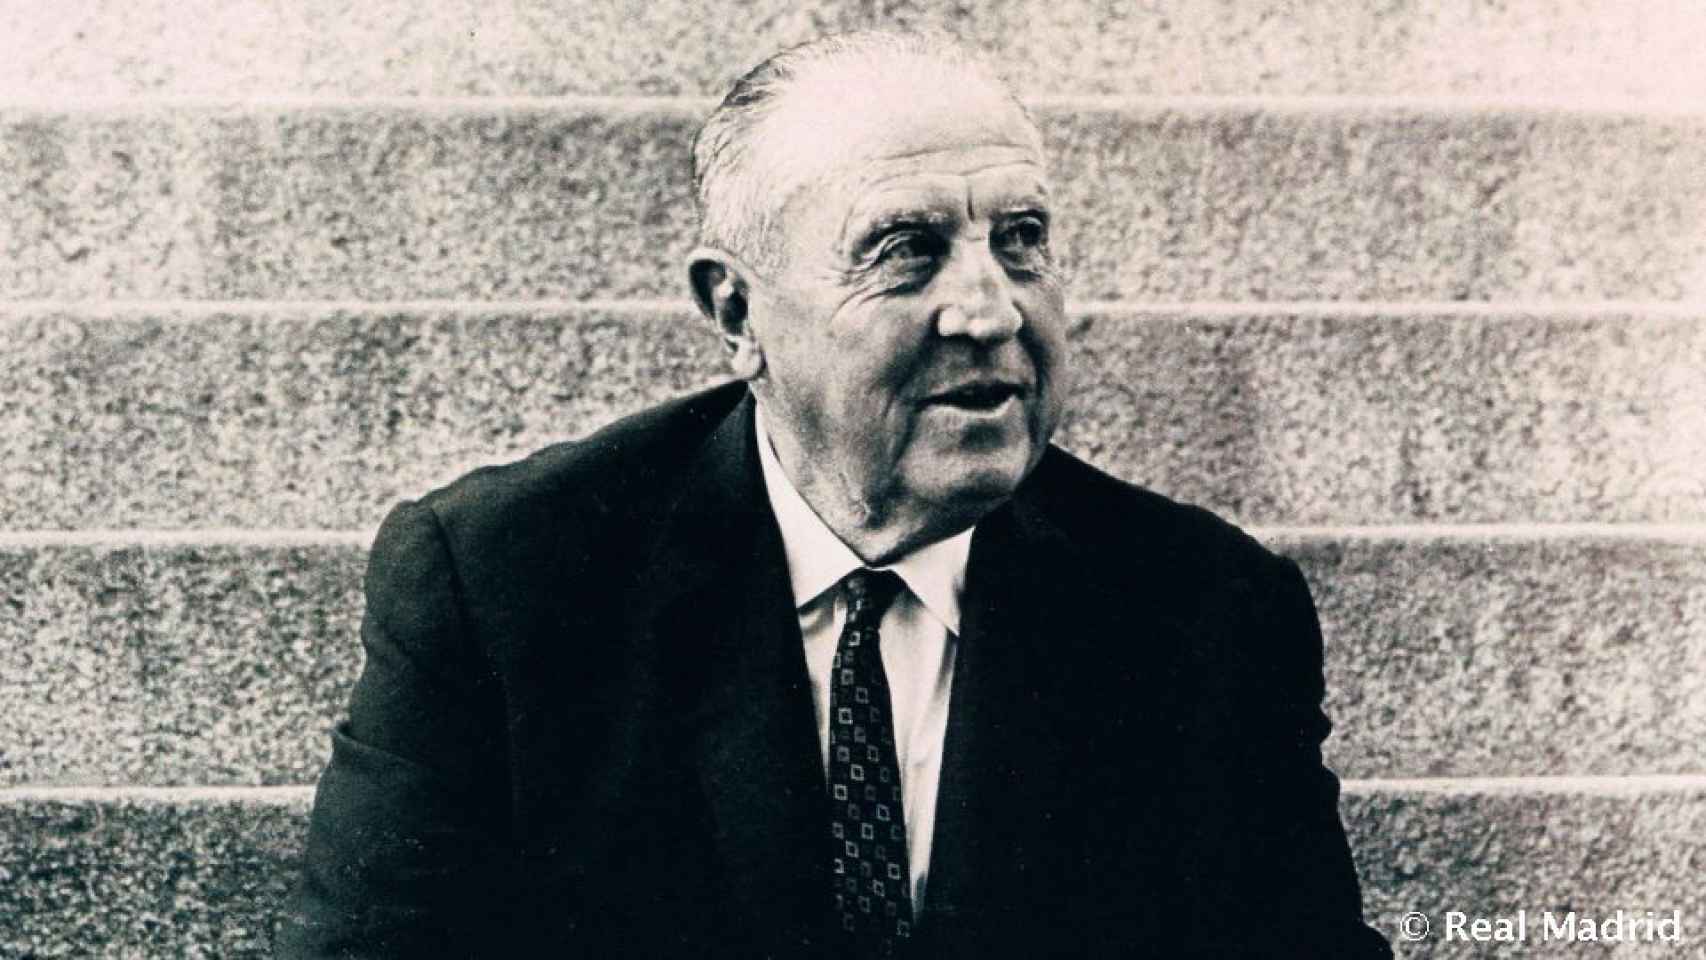 Santiago Bernabéu, en una foto en avanzada edad.